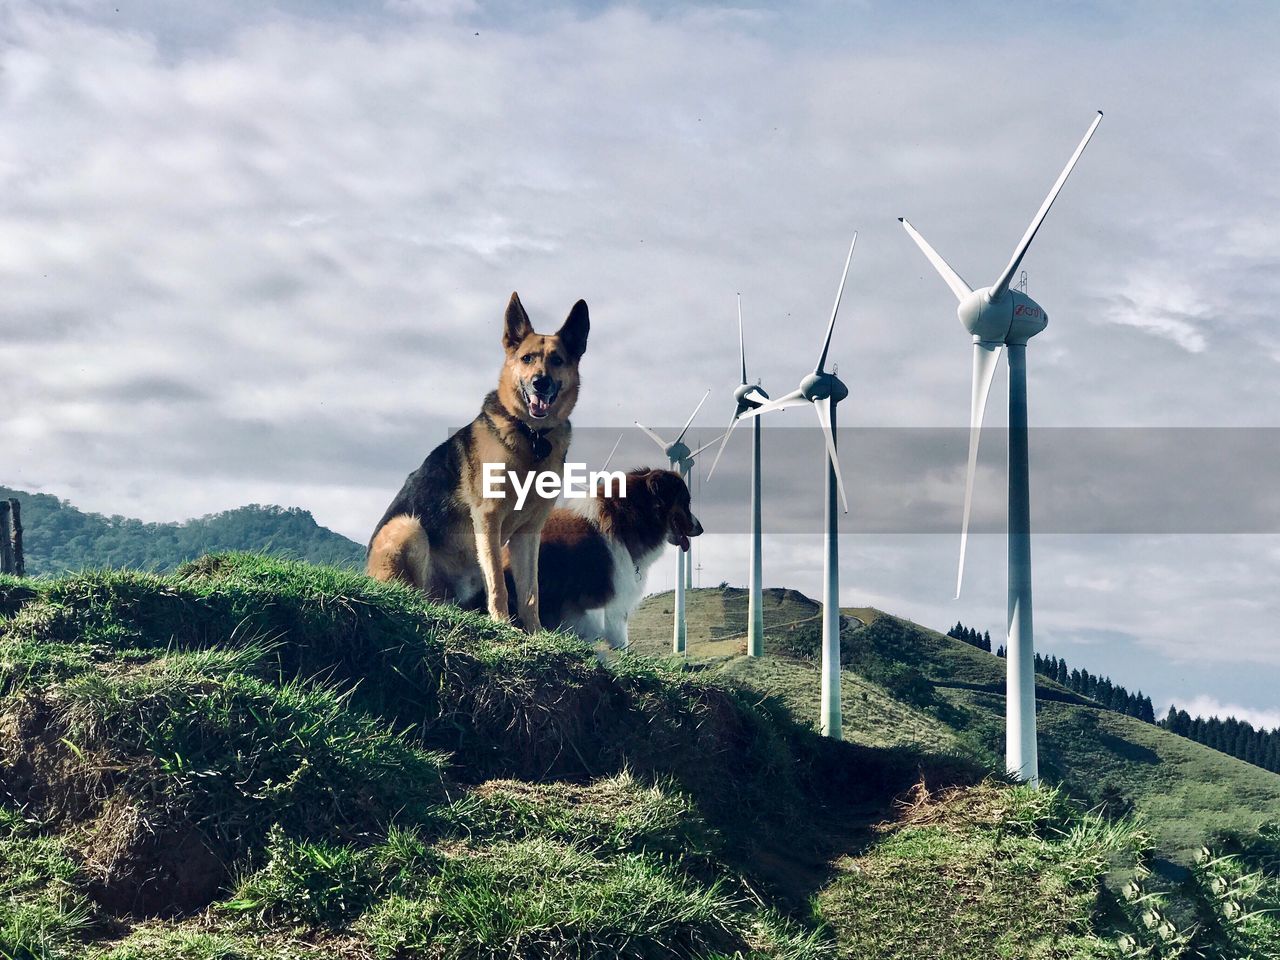 Dogs on hillside underneath wind turbines 